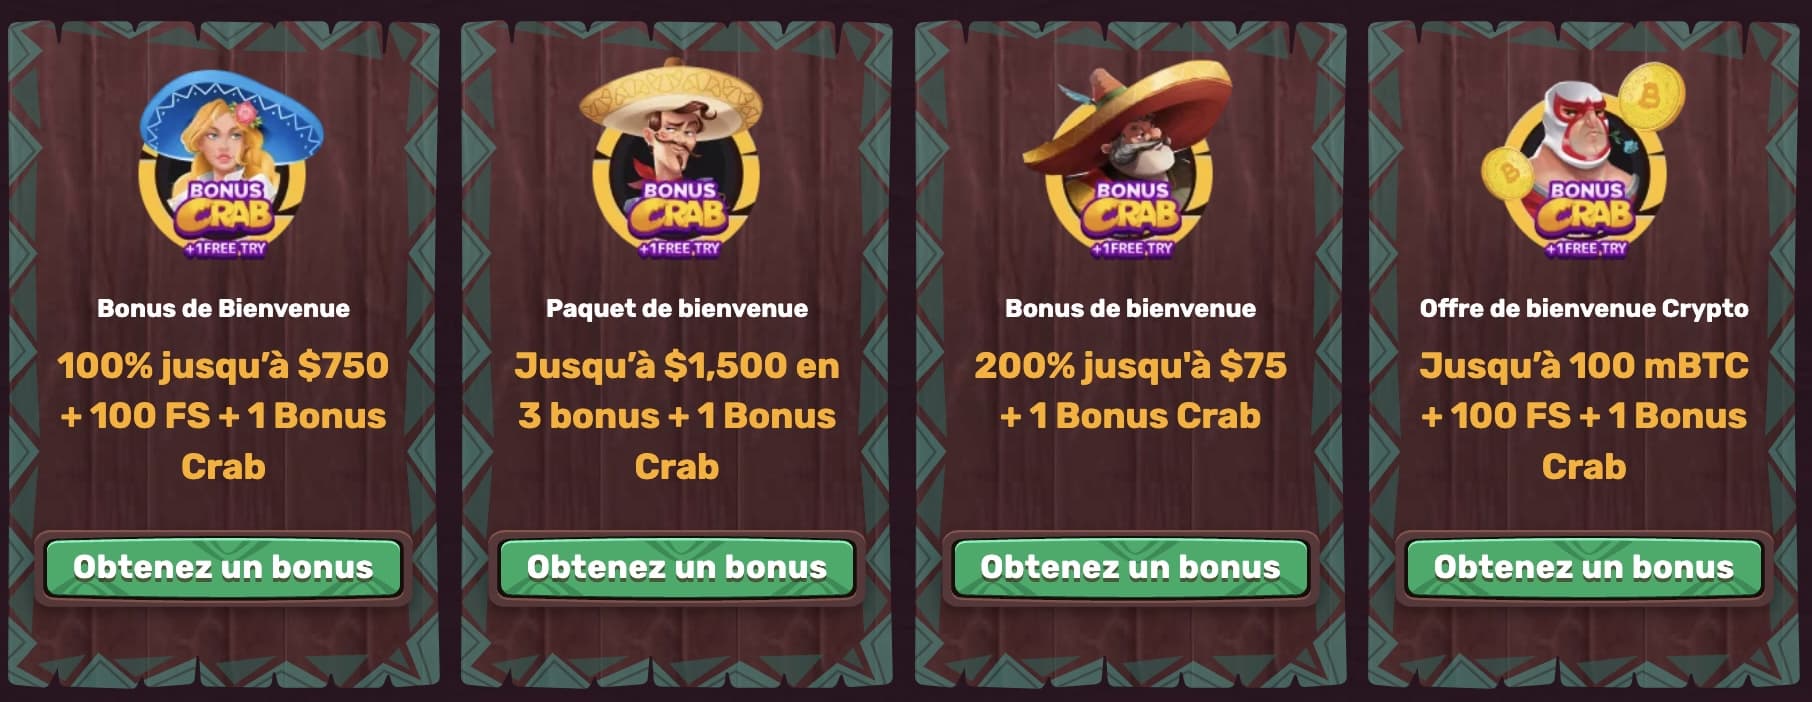 5gringos-bonus-2-min